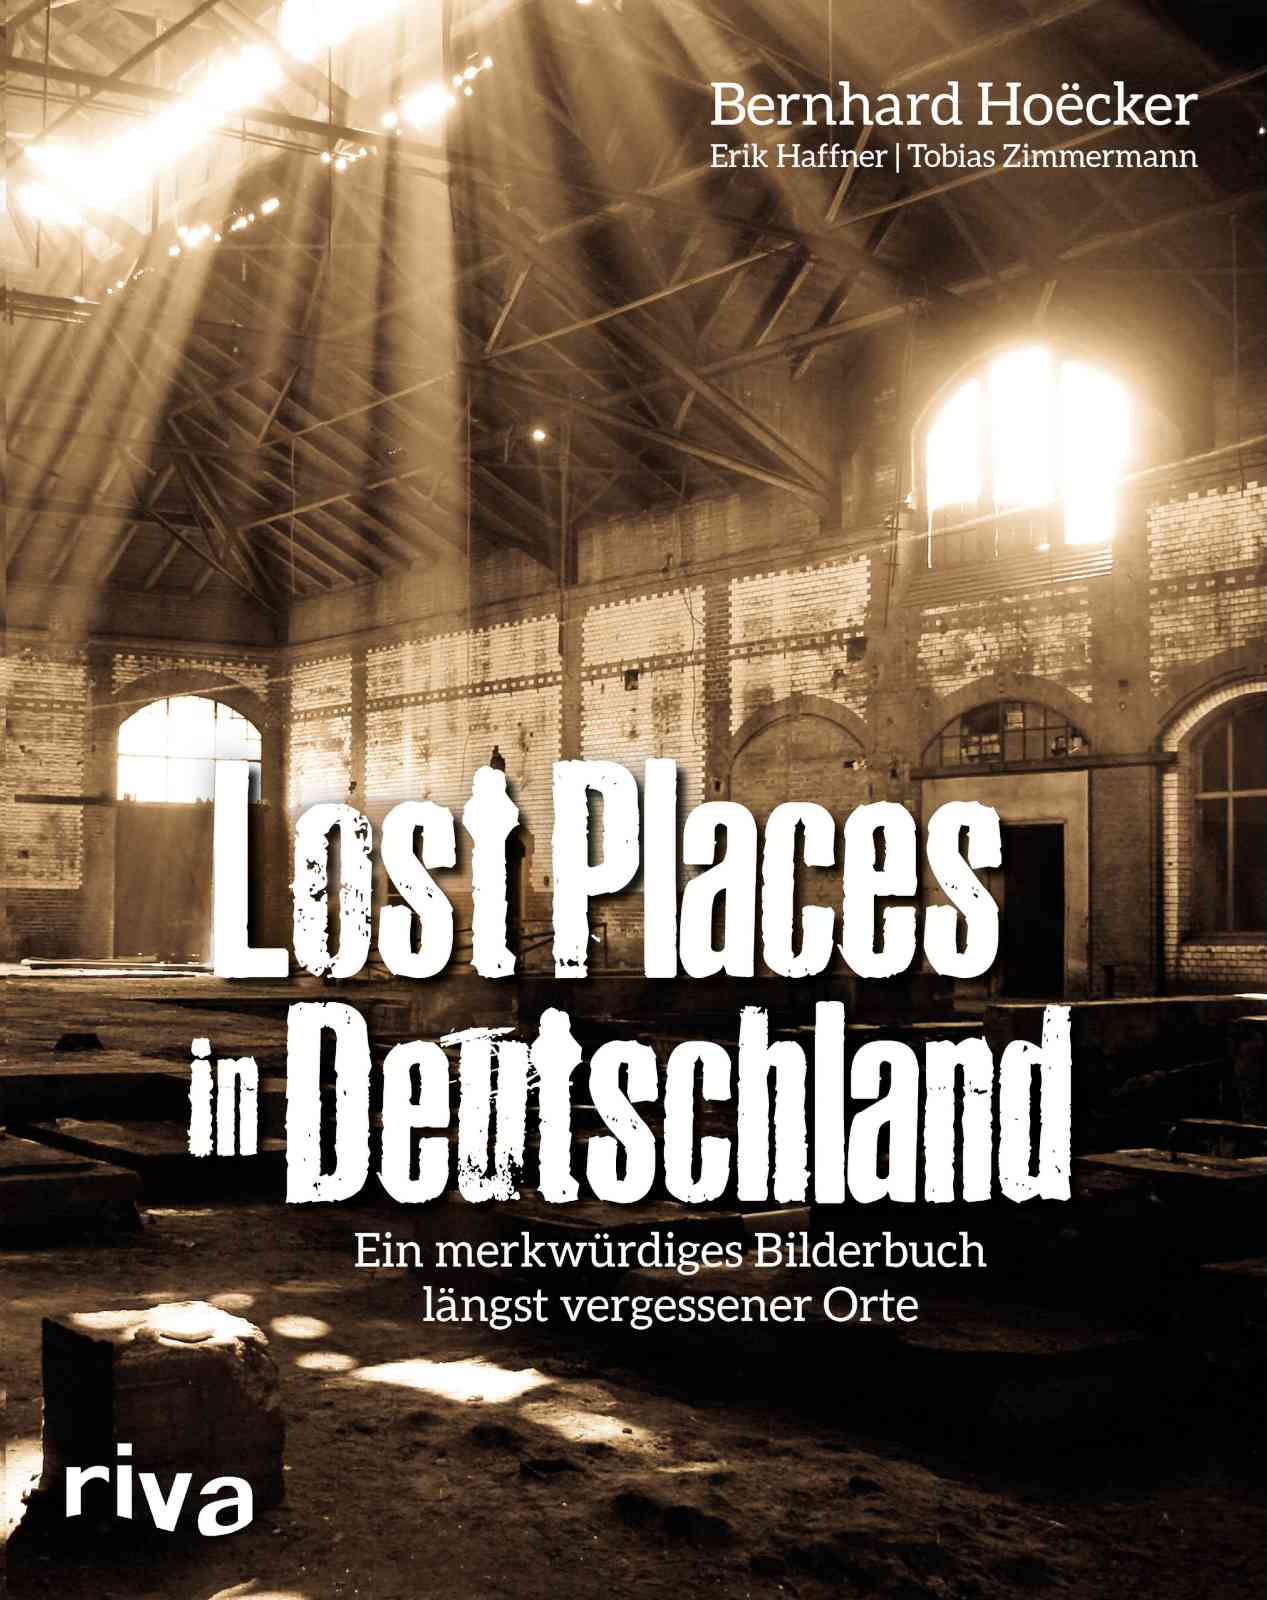 Bernhard Hoecker - Lostplaces in Deutschland